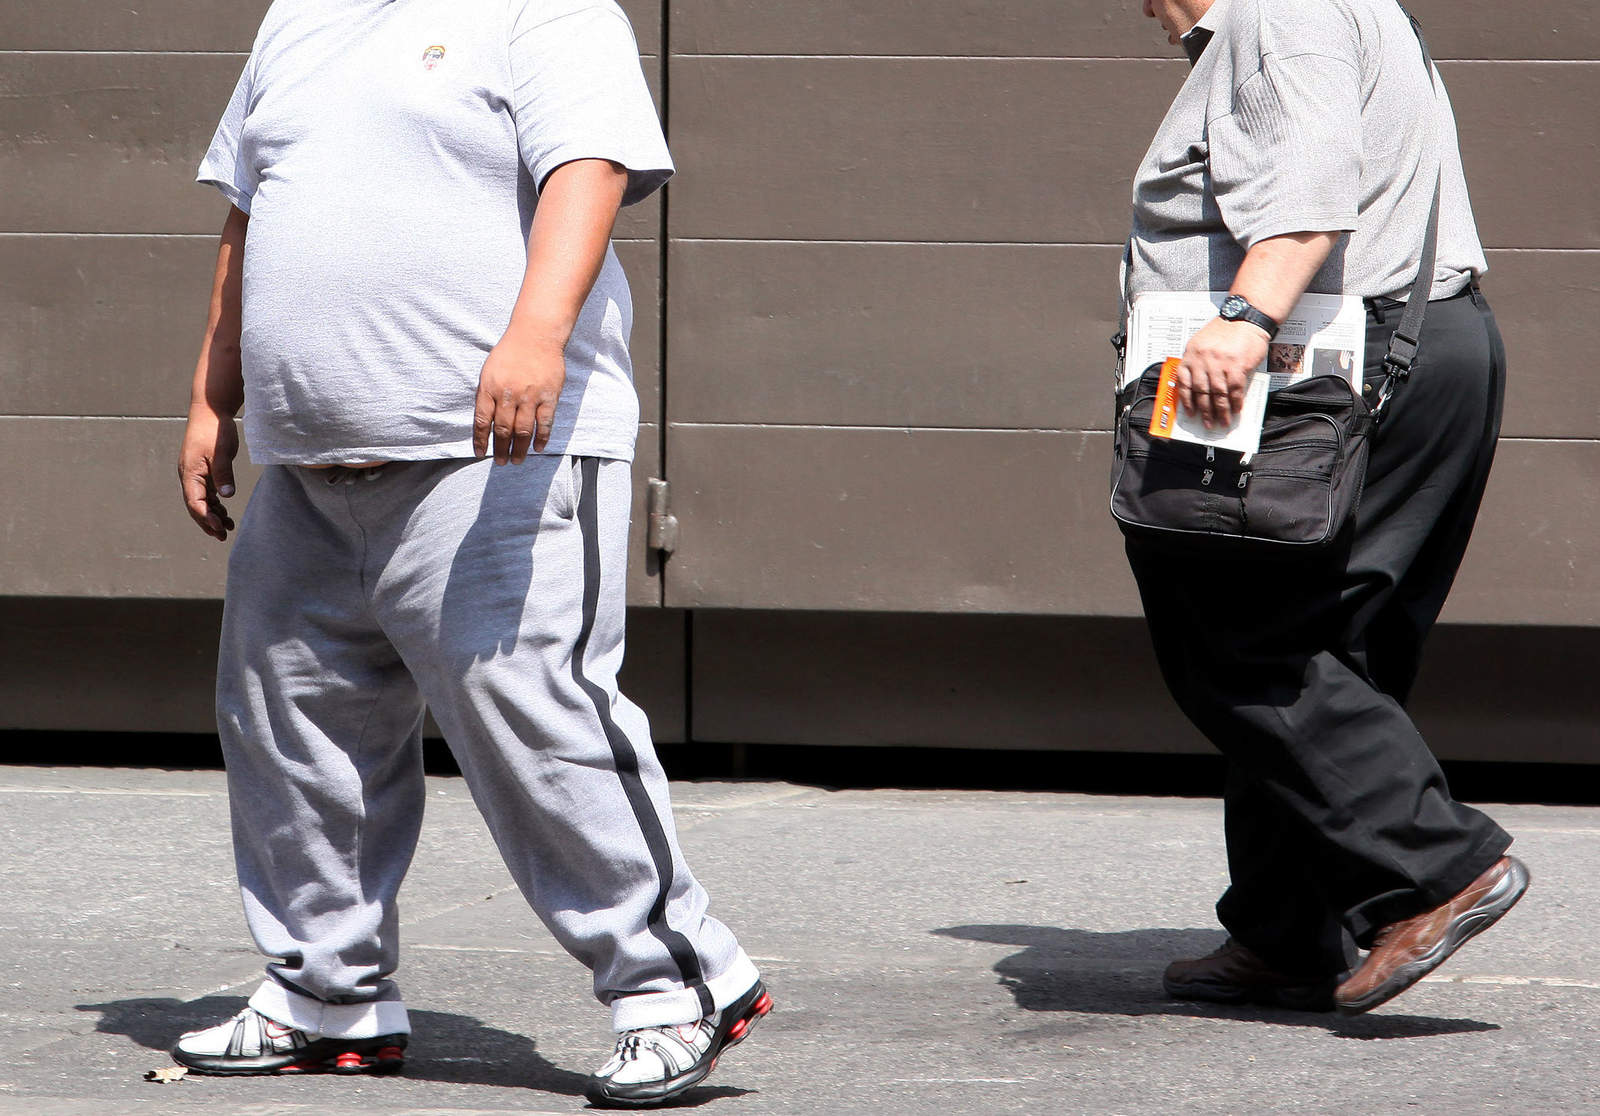 México es uno de los países con mayor sobrepeso y obesidad del mundo, mientras que los índices de diabetes en el país se han incrementado considerablemente en los últimos años. (ARCHIVO)